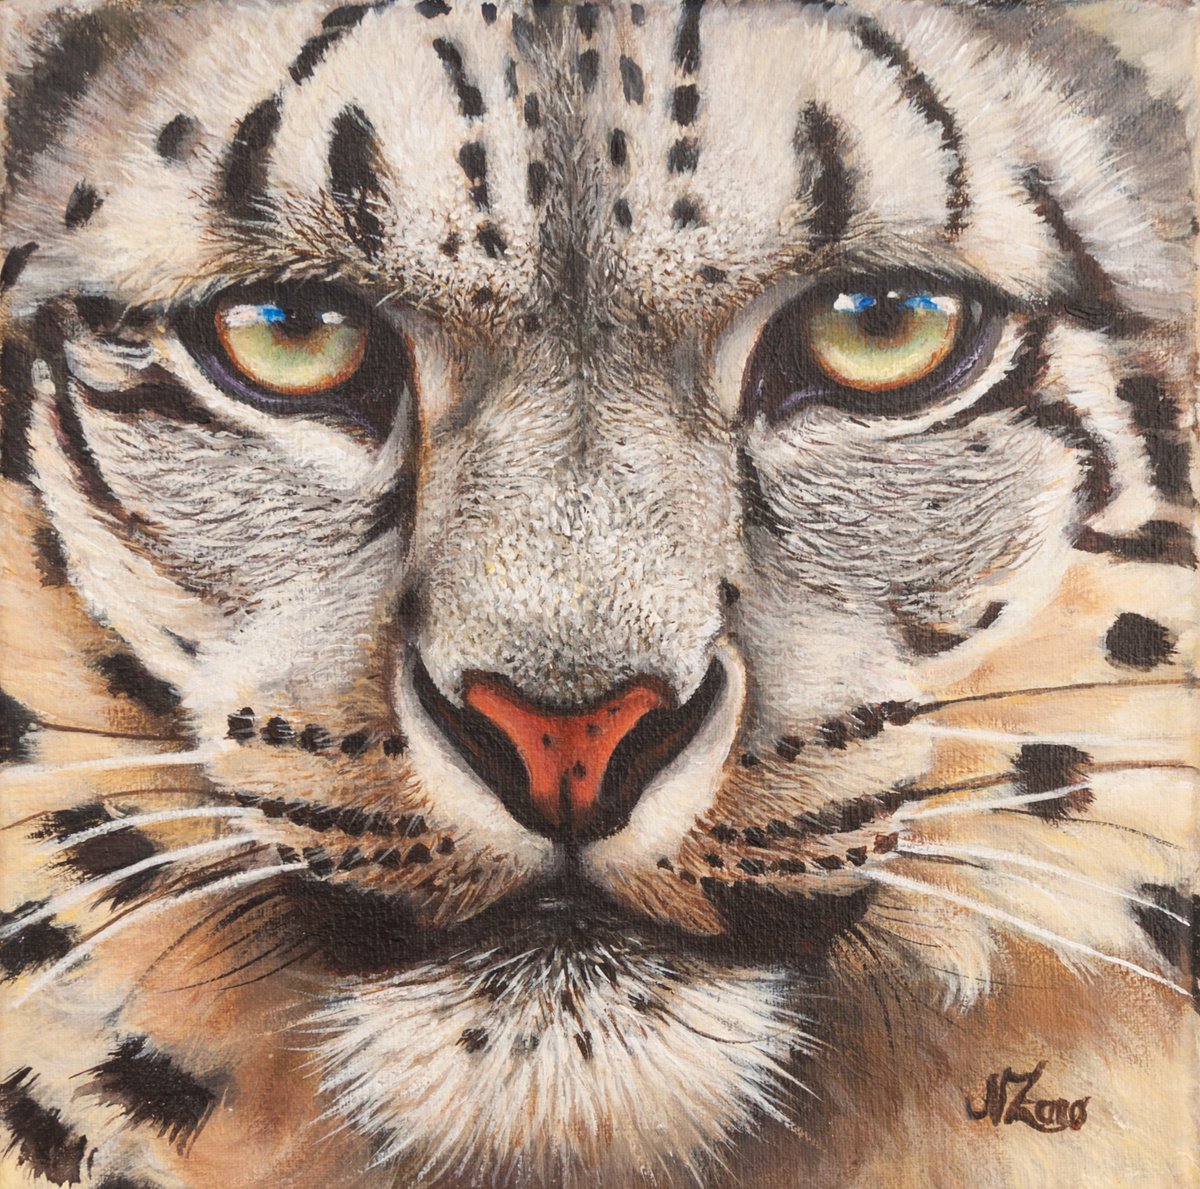 Snow leopard portrait by Norma Beatriz Zaro